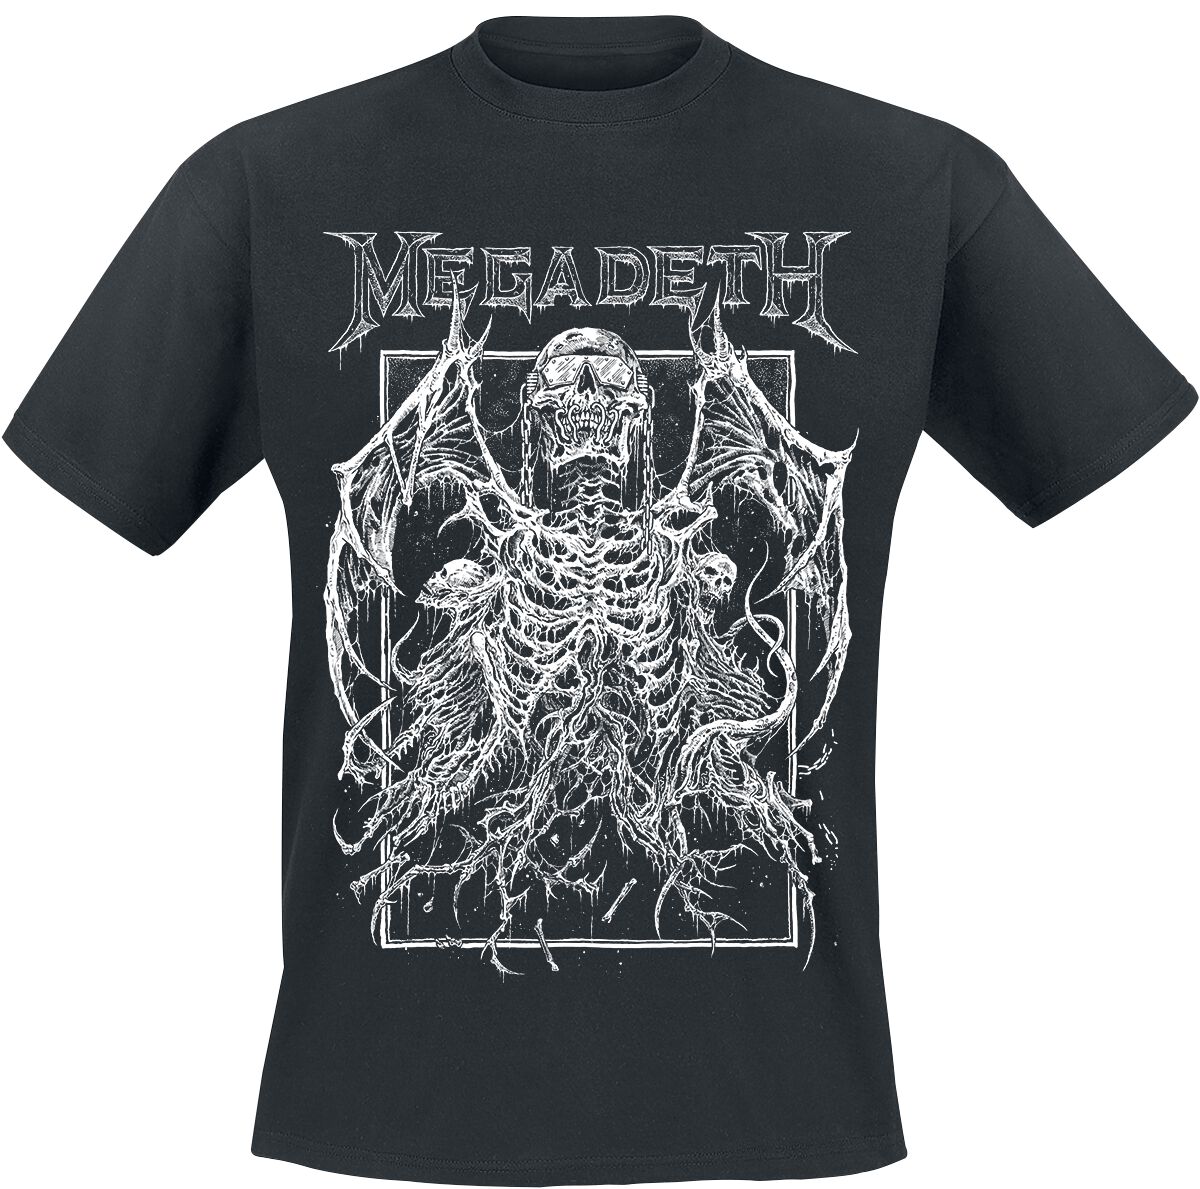 Megadeth T-Shirt - Rising - S bis 4XL - für Männer - Größe 4XL - schwarz  - Lizenziertes Merchandise!